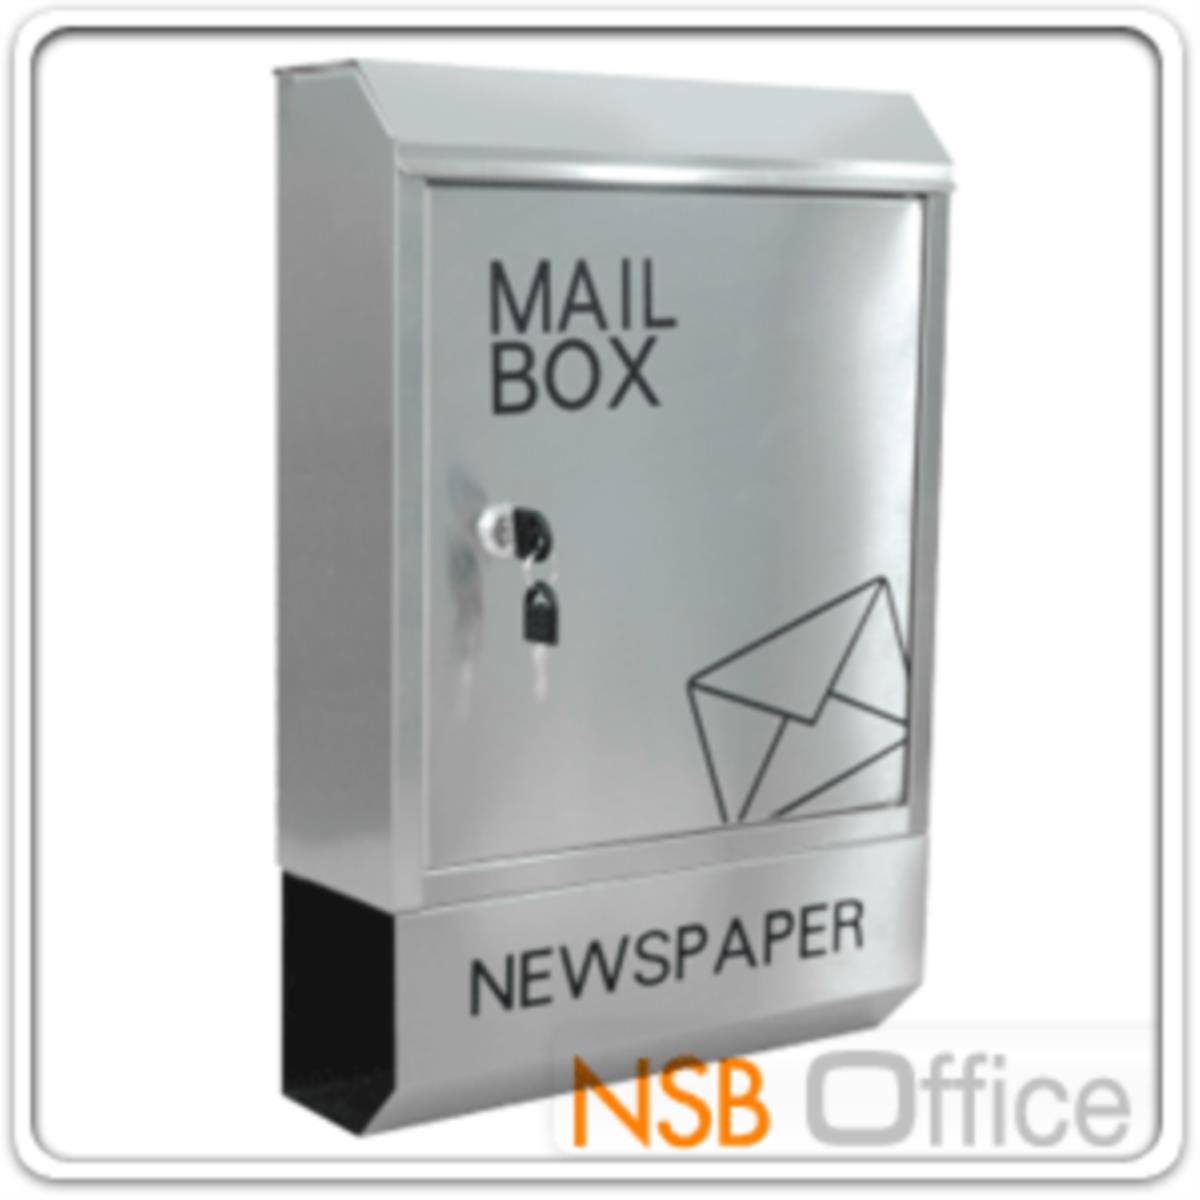 ตู้จดหมายเหล็ก รุ่น MAIL BOX-053 มีกุญแจล็อคหน้าตู้   